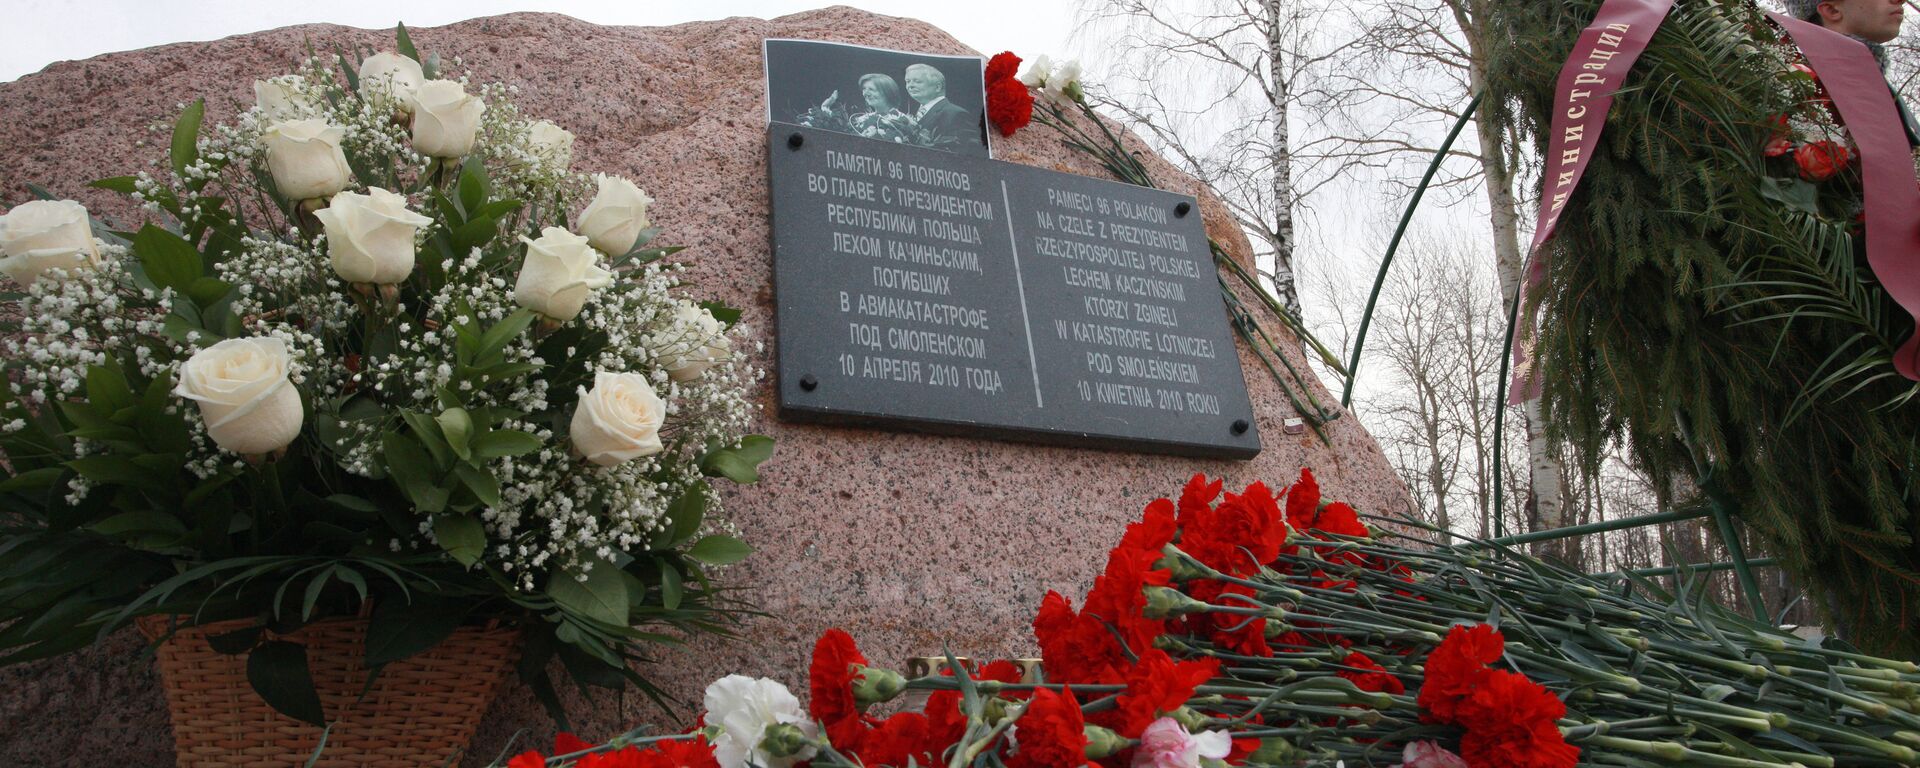 Цветы у памятного камня, установленного на месте крушения польского самолета Ту-154 - Sputnik Литва, 1920, 26.11.2020